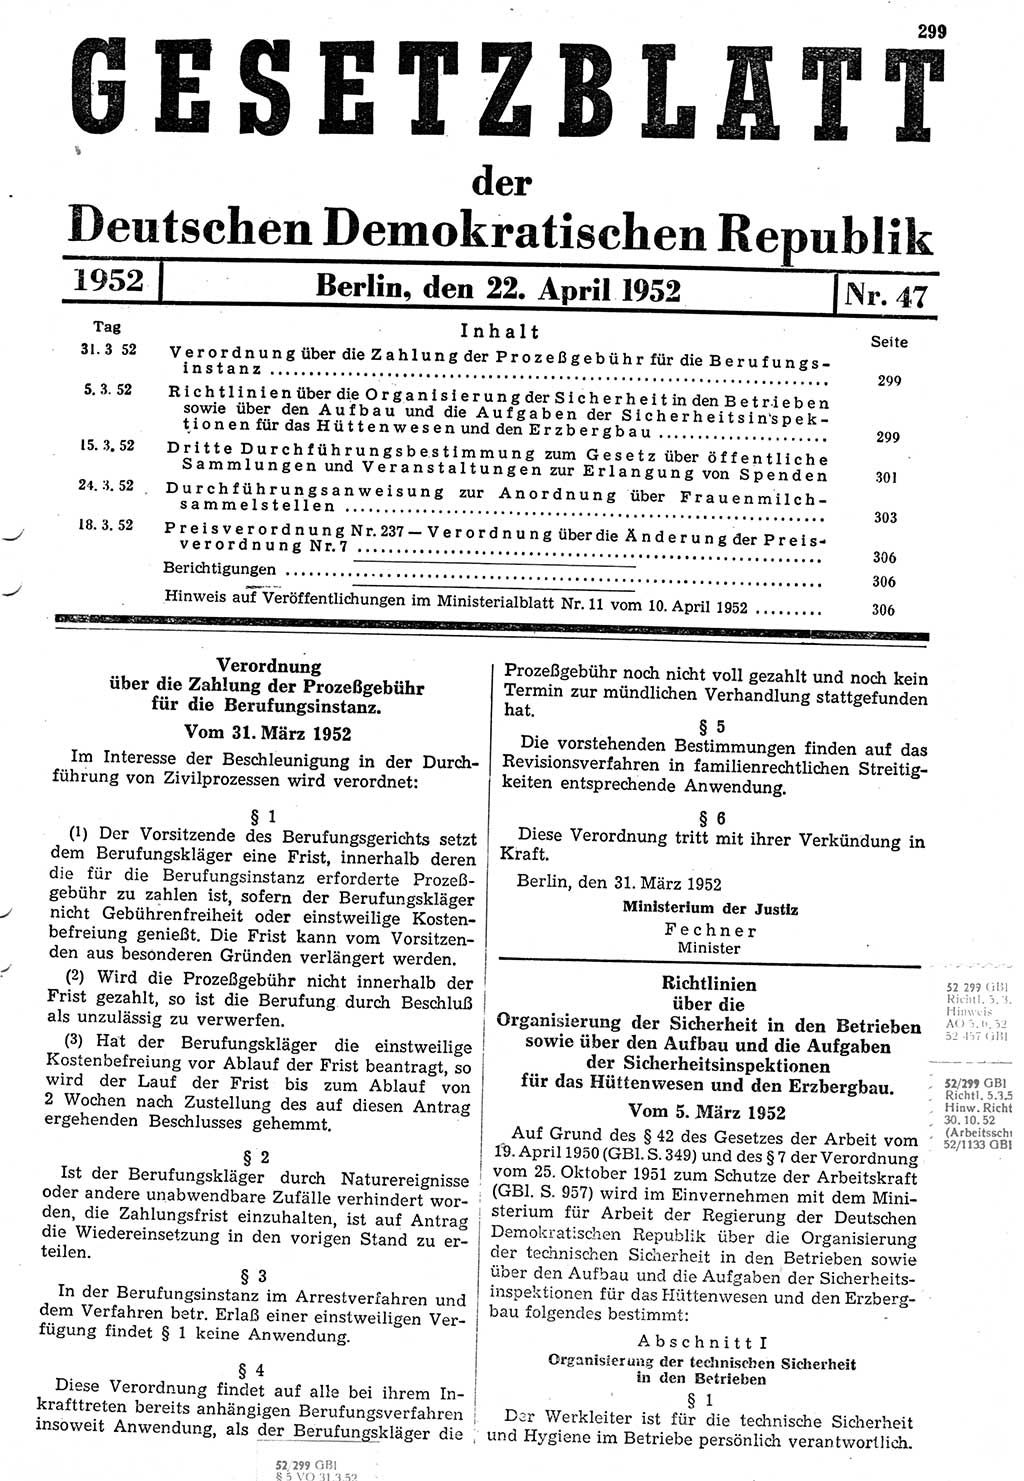 Gesetzblatt (GBl.) der Deutschen Demokratischen Republik (DDR) 1952, Seite 299 (GBl. DDR 1952, S. 299)